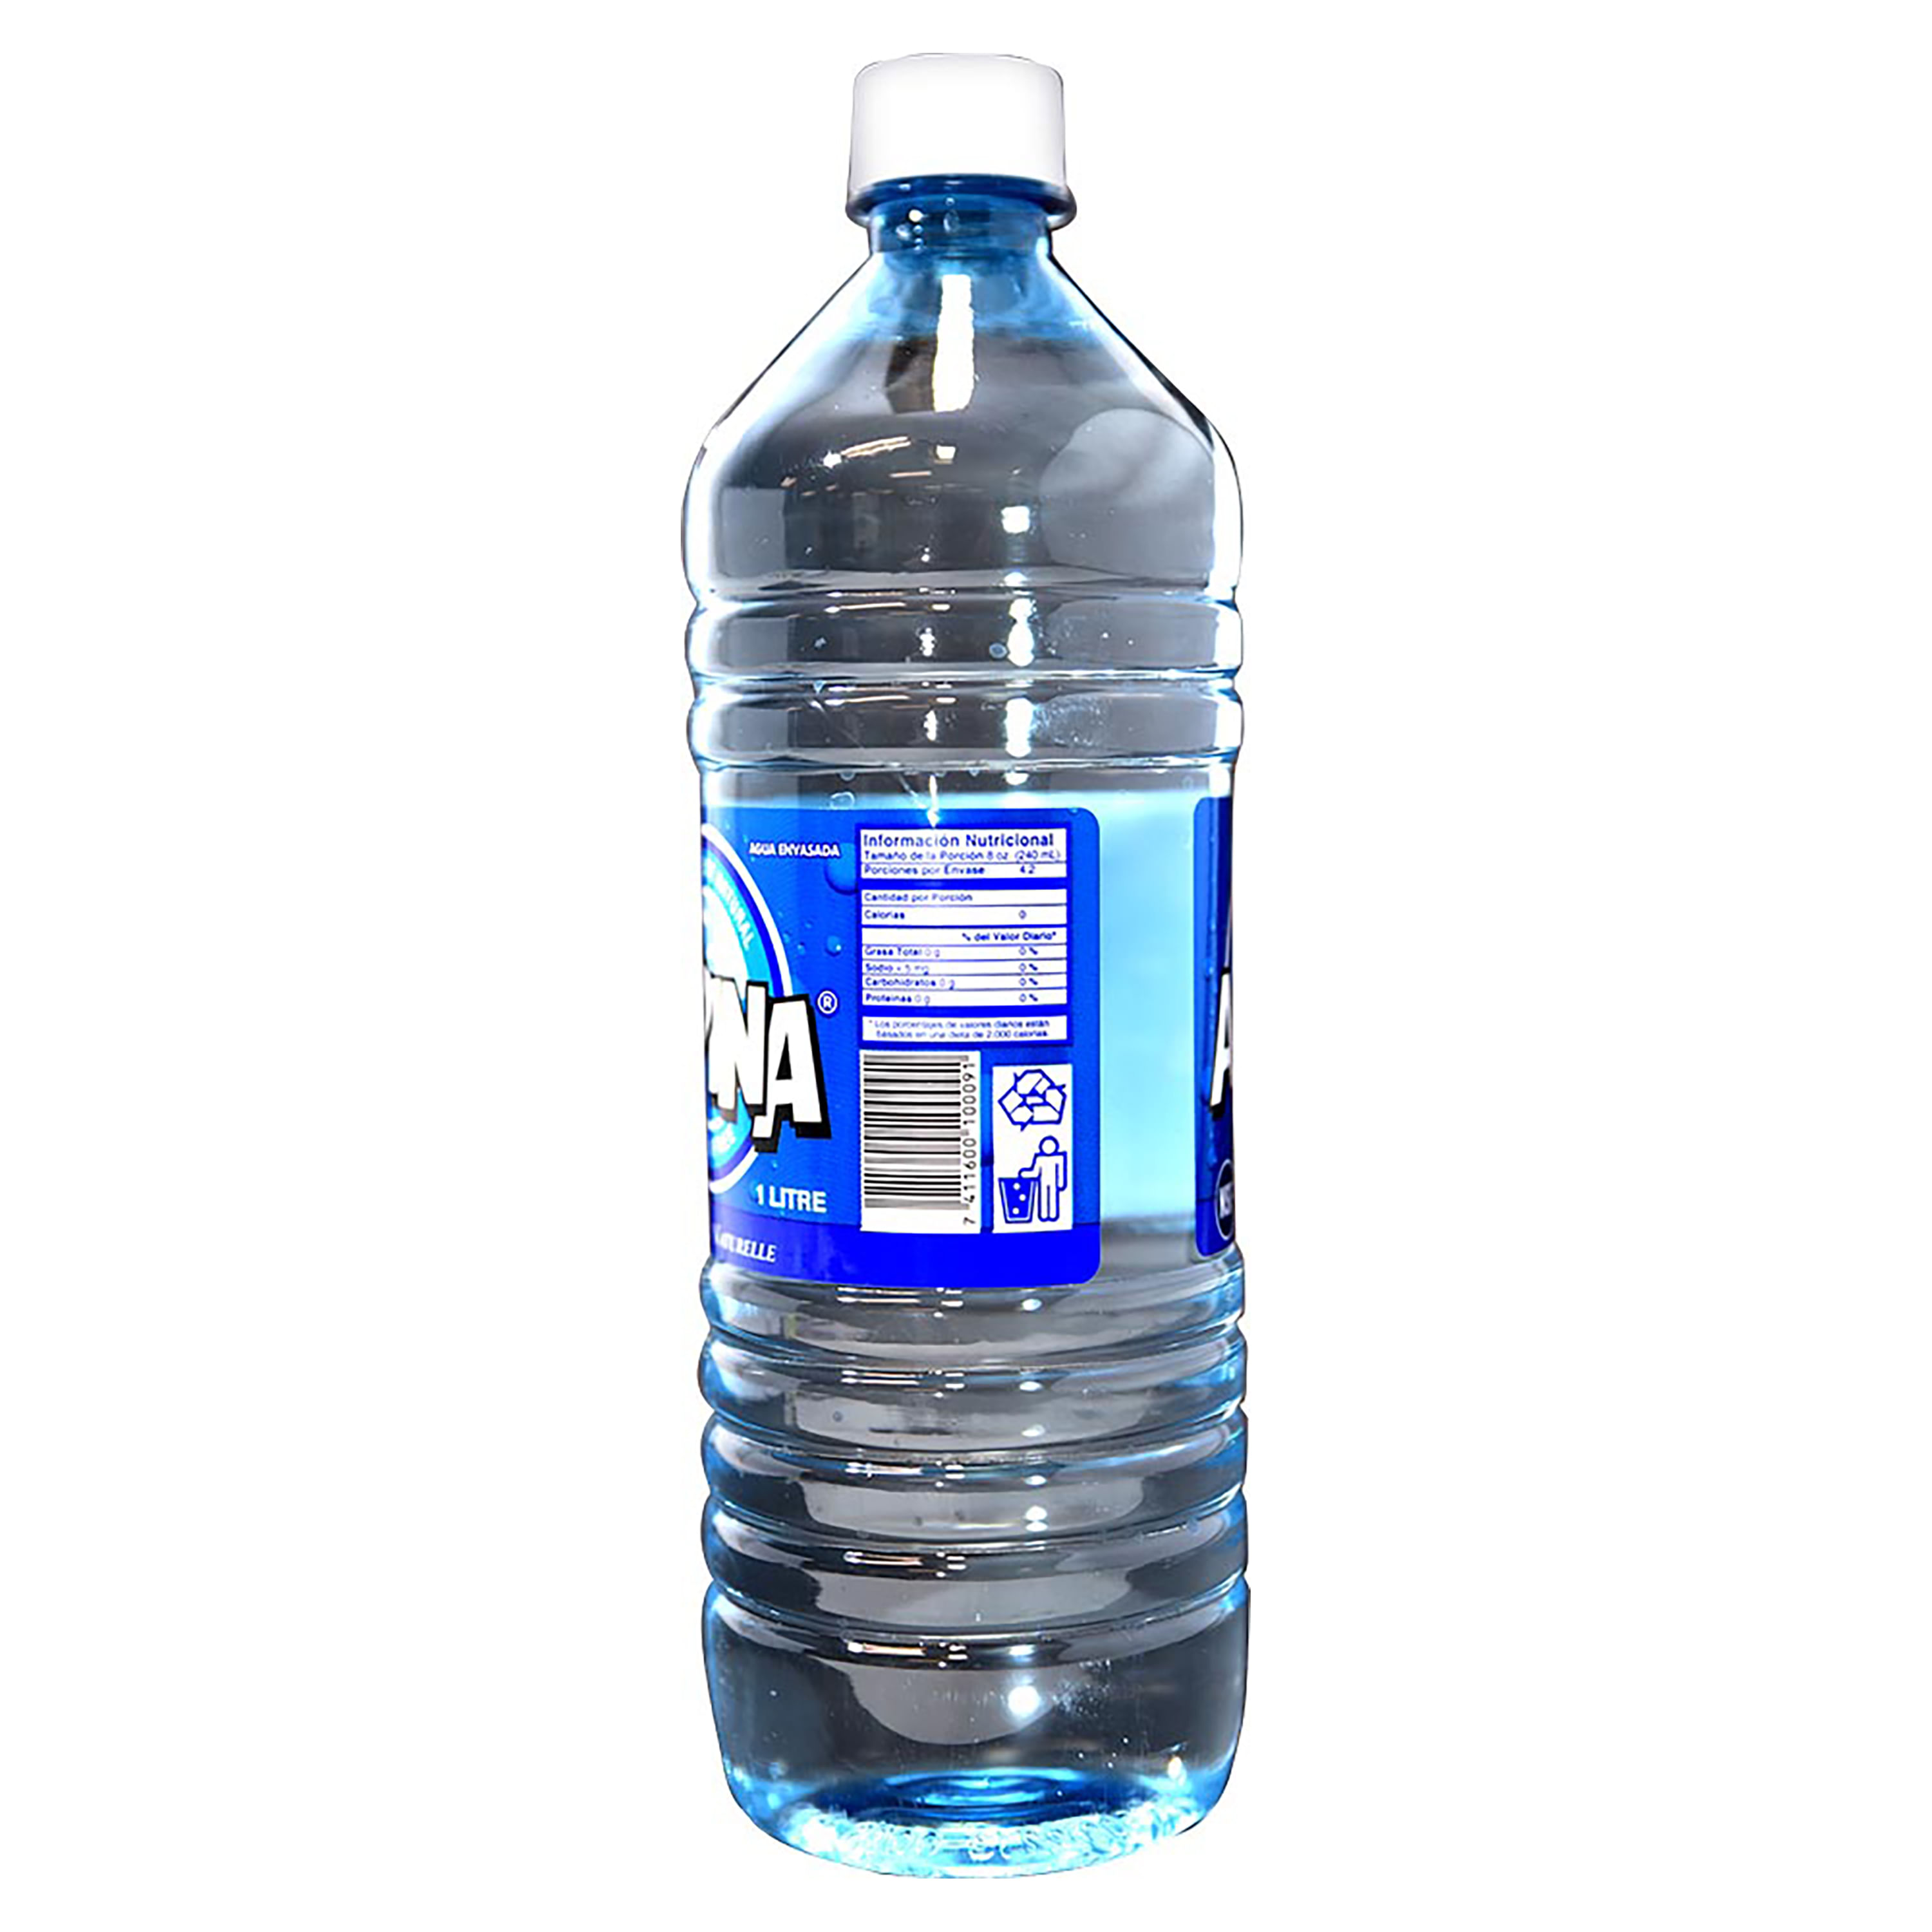 Botella agua 1 litro